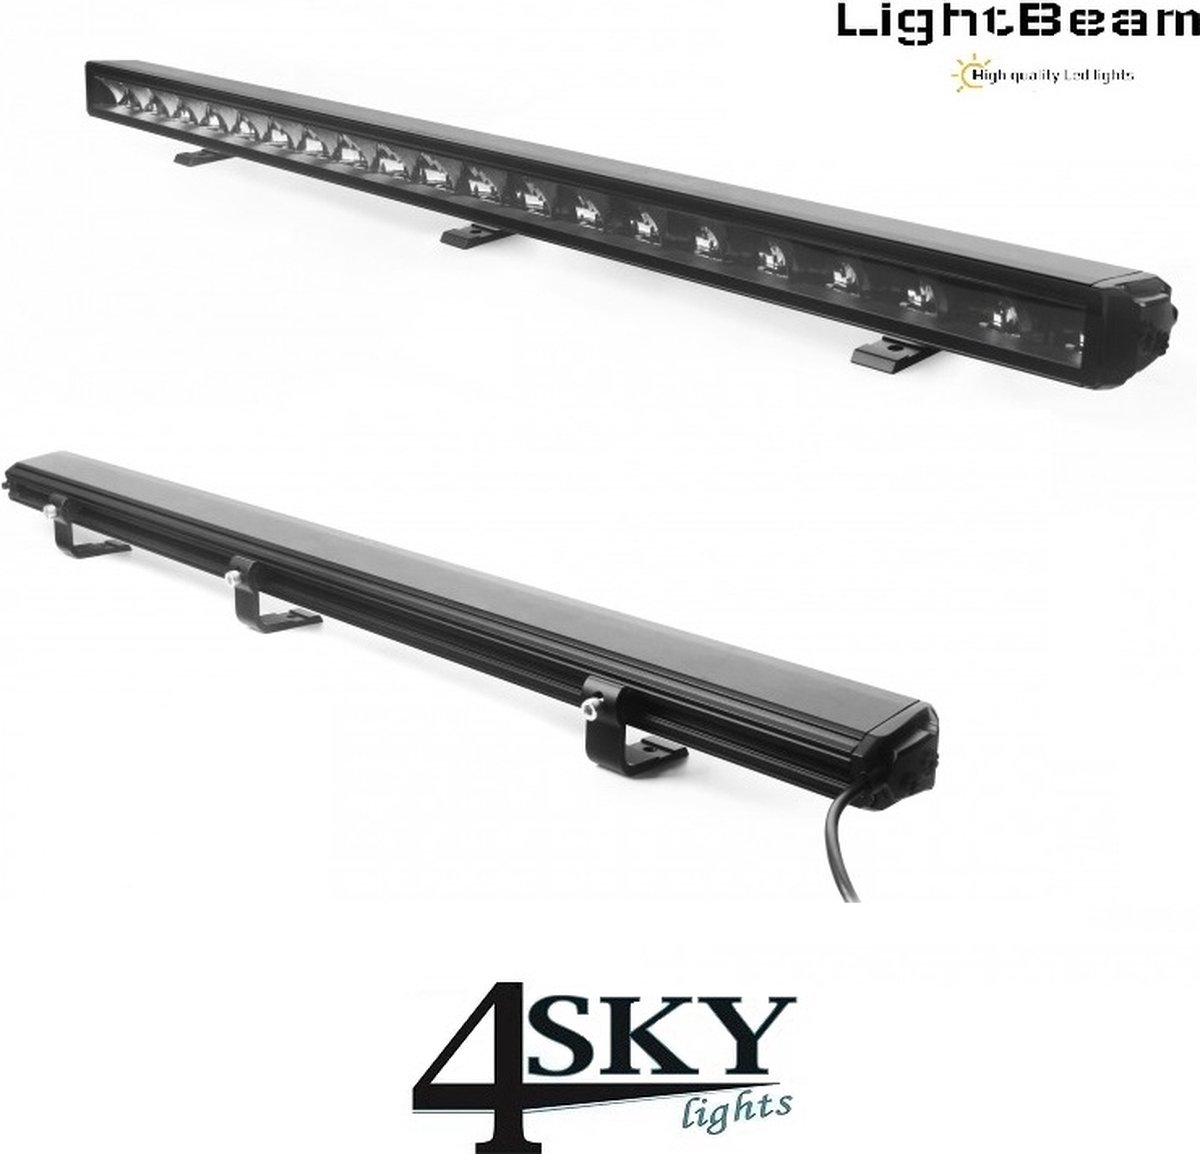 Lightbeam Led Light Bar met positielicht 104cm lang R10 gekeurd 12.690 lumen